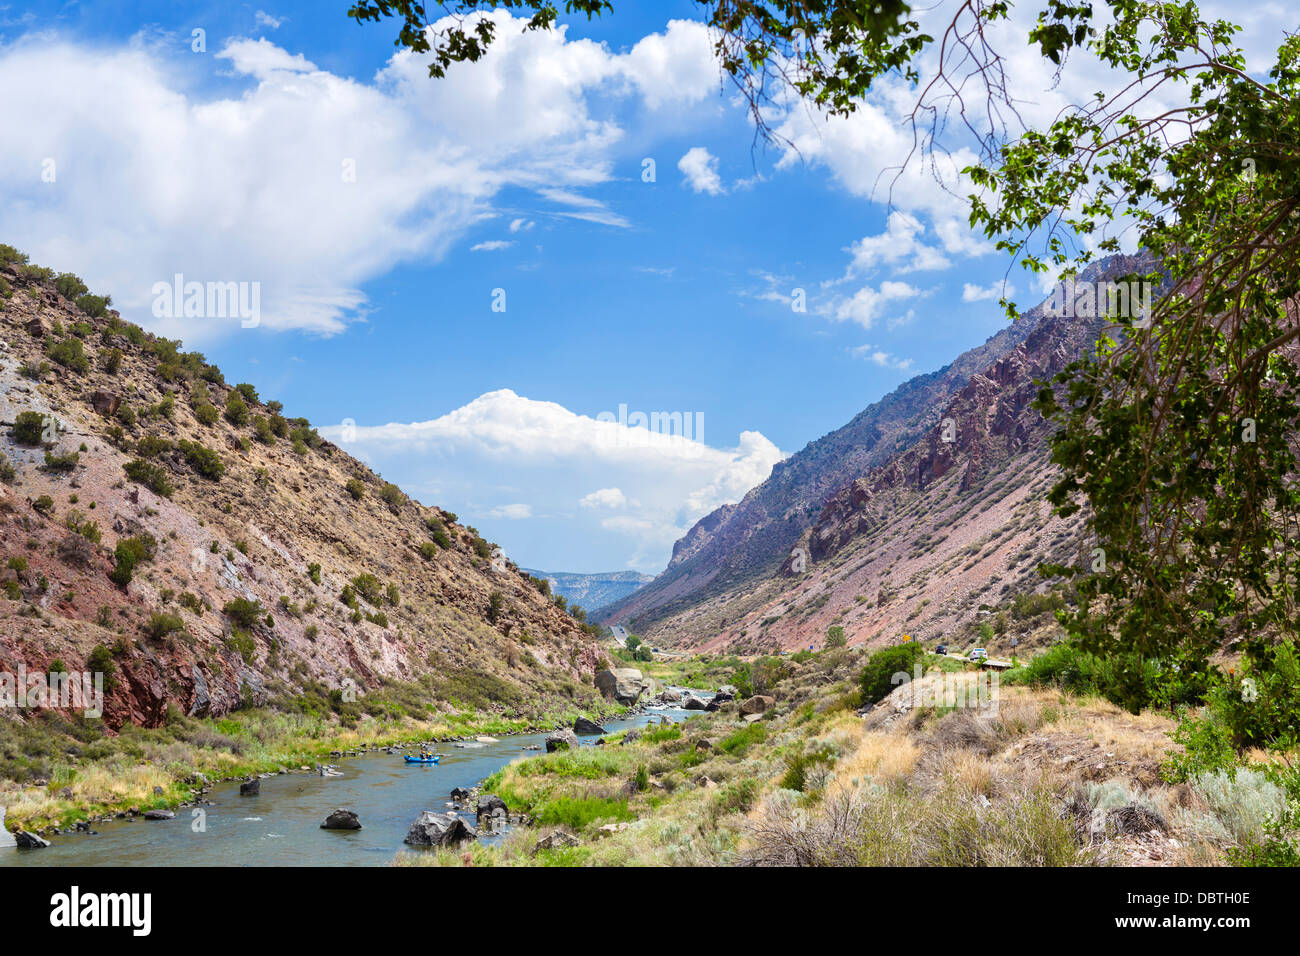 Rafting sur le Rio Grande dans le Canyon du Rio Grande du sud-ouest de Taos, New Mexico, USA Banque D'Images